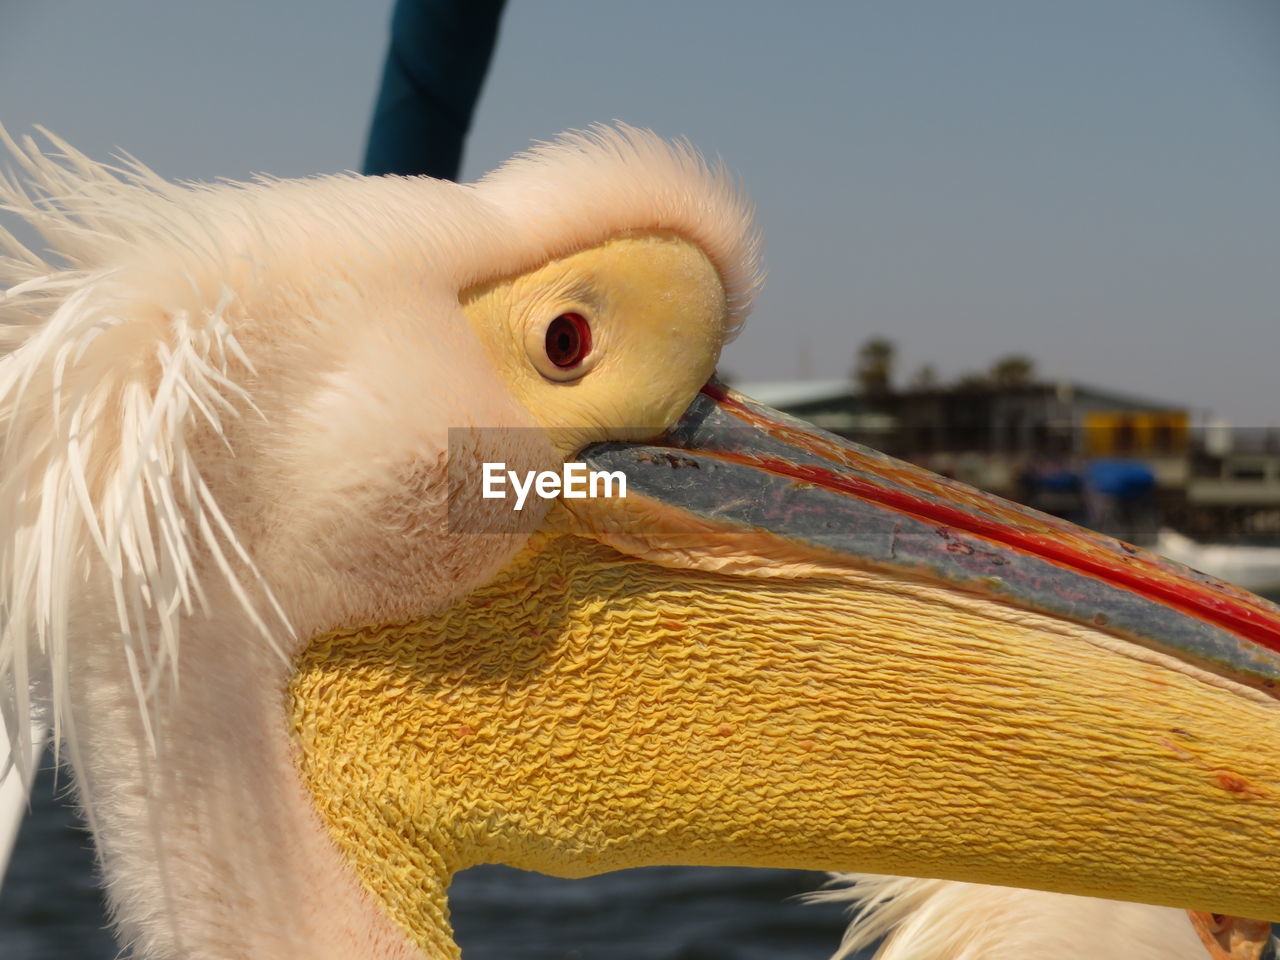 Close-up of a pelican